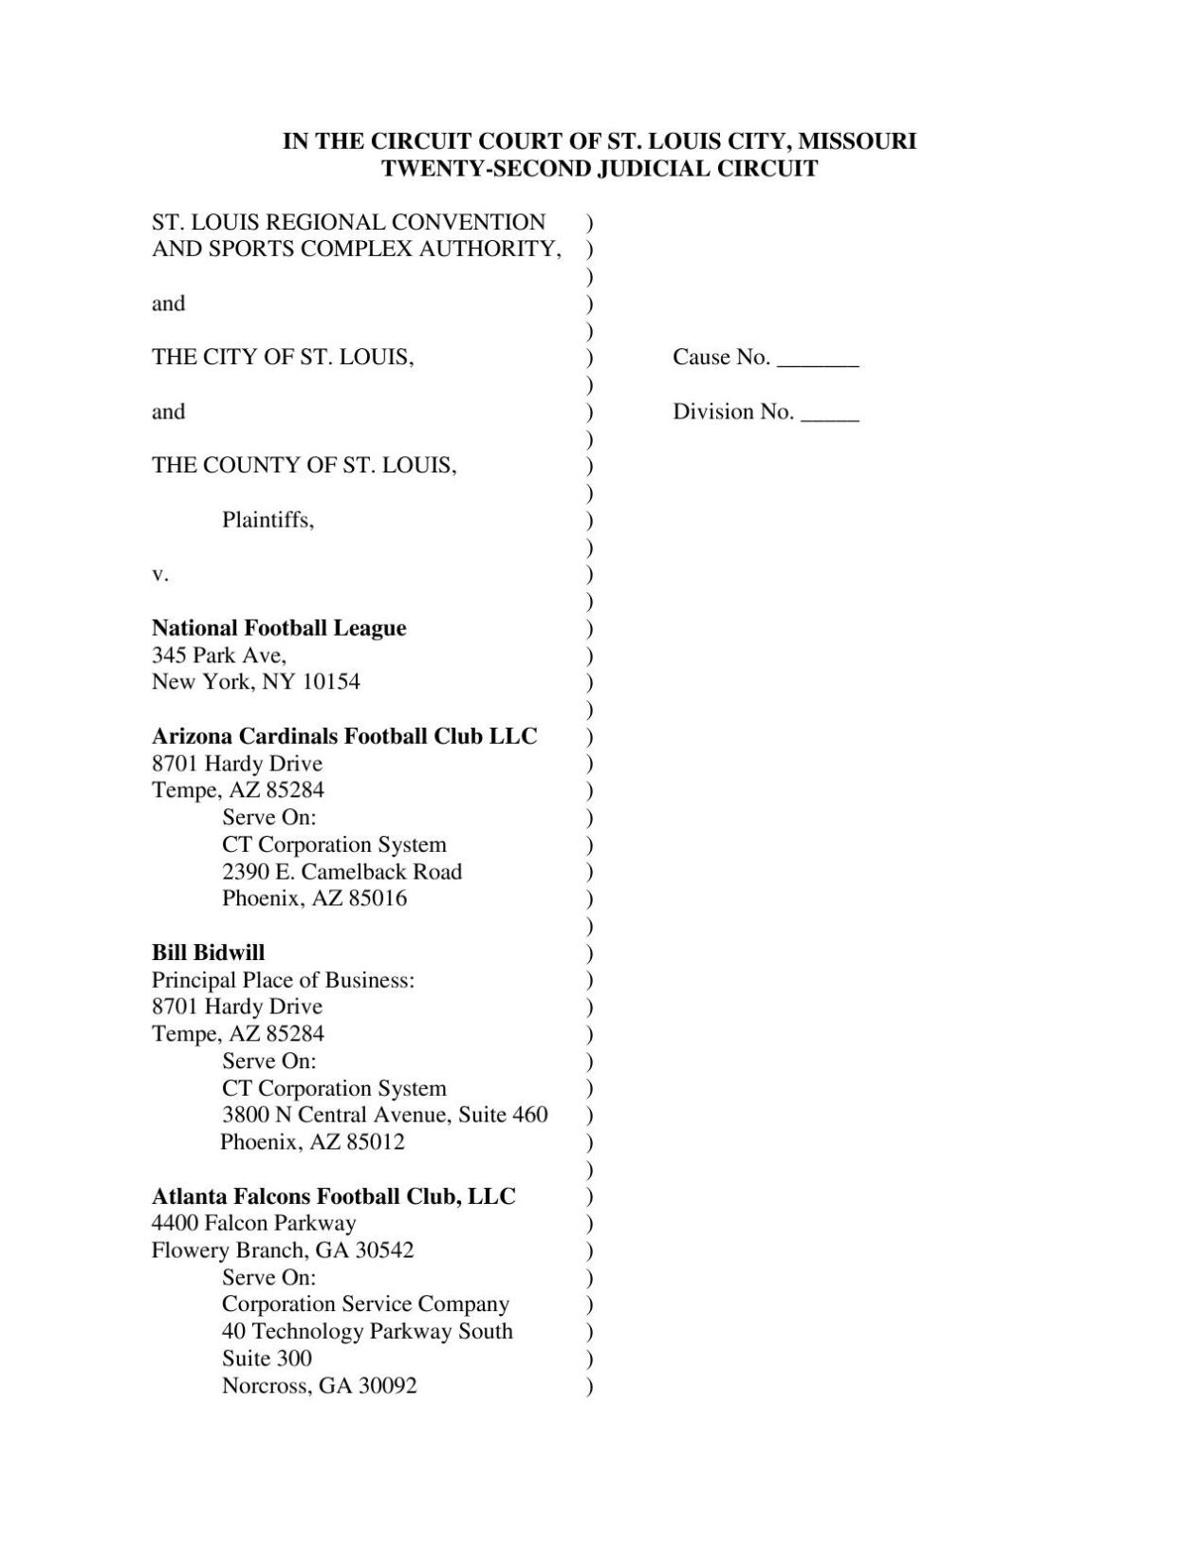 PDF: St. Louis, St. Louis County lawsuit filed against NFL